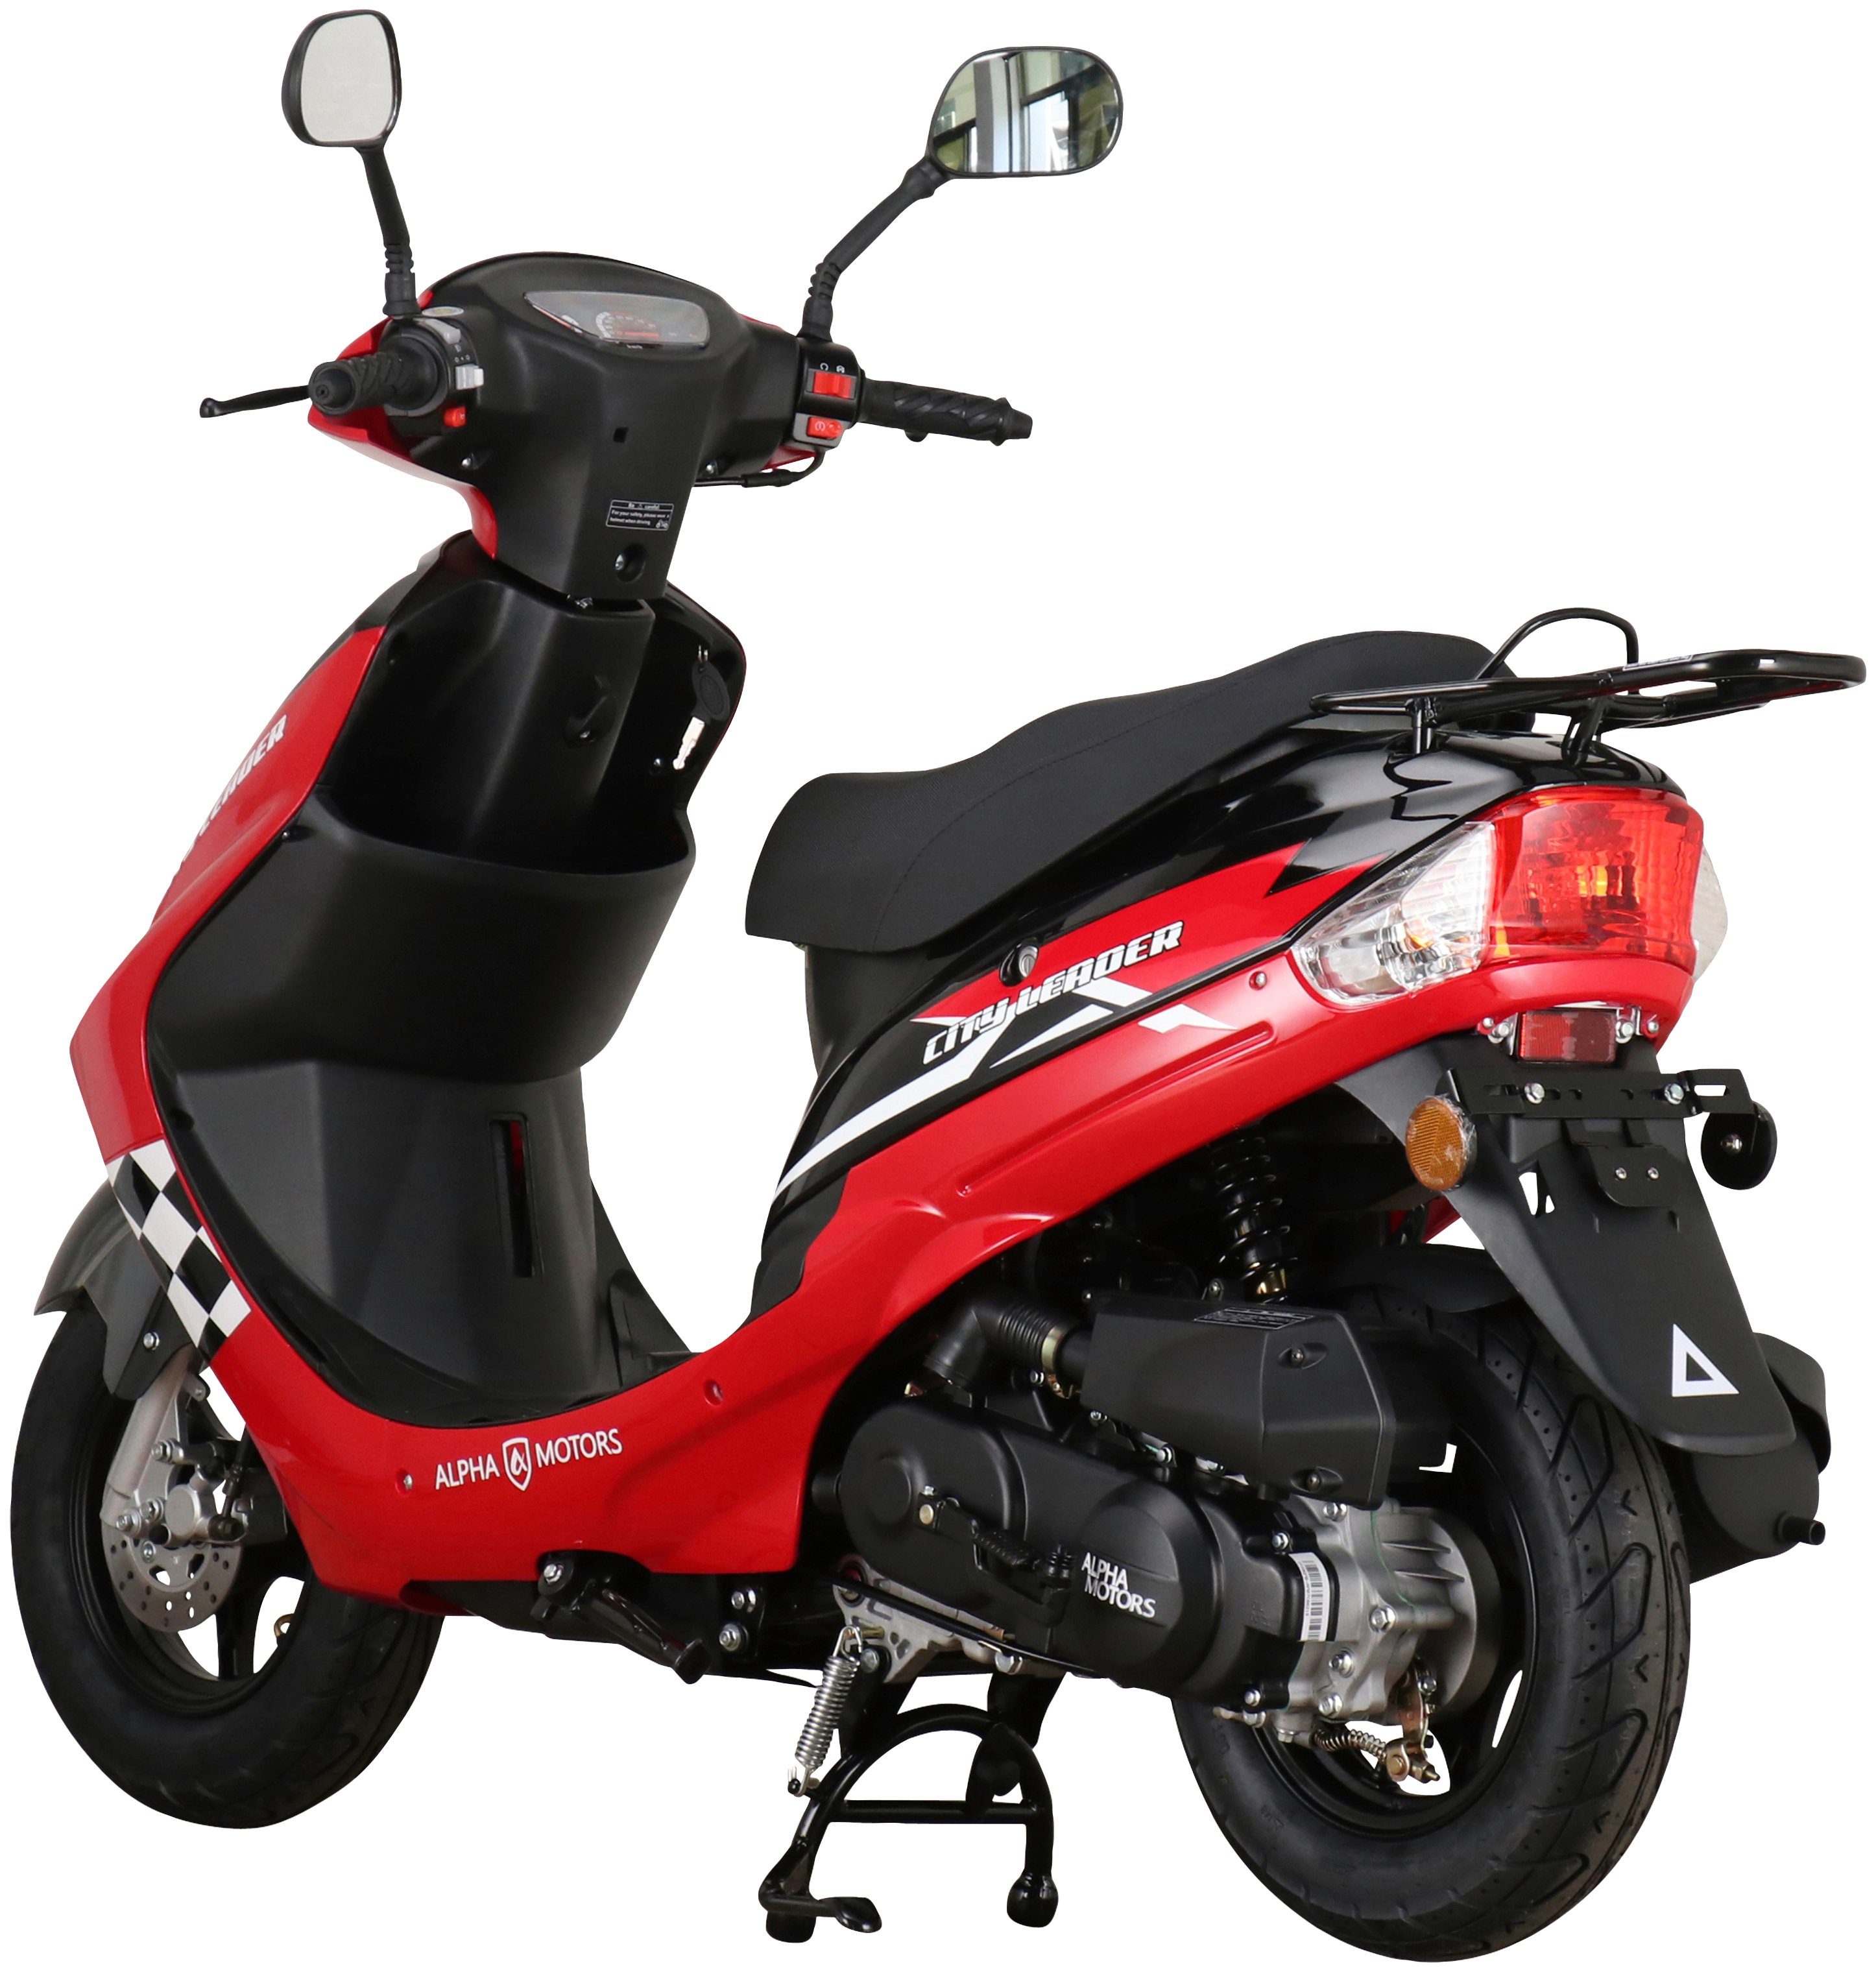 Alpha Motors Motorroller CityLeader, 45 rot km/h, 50 ccm, 5 Euro